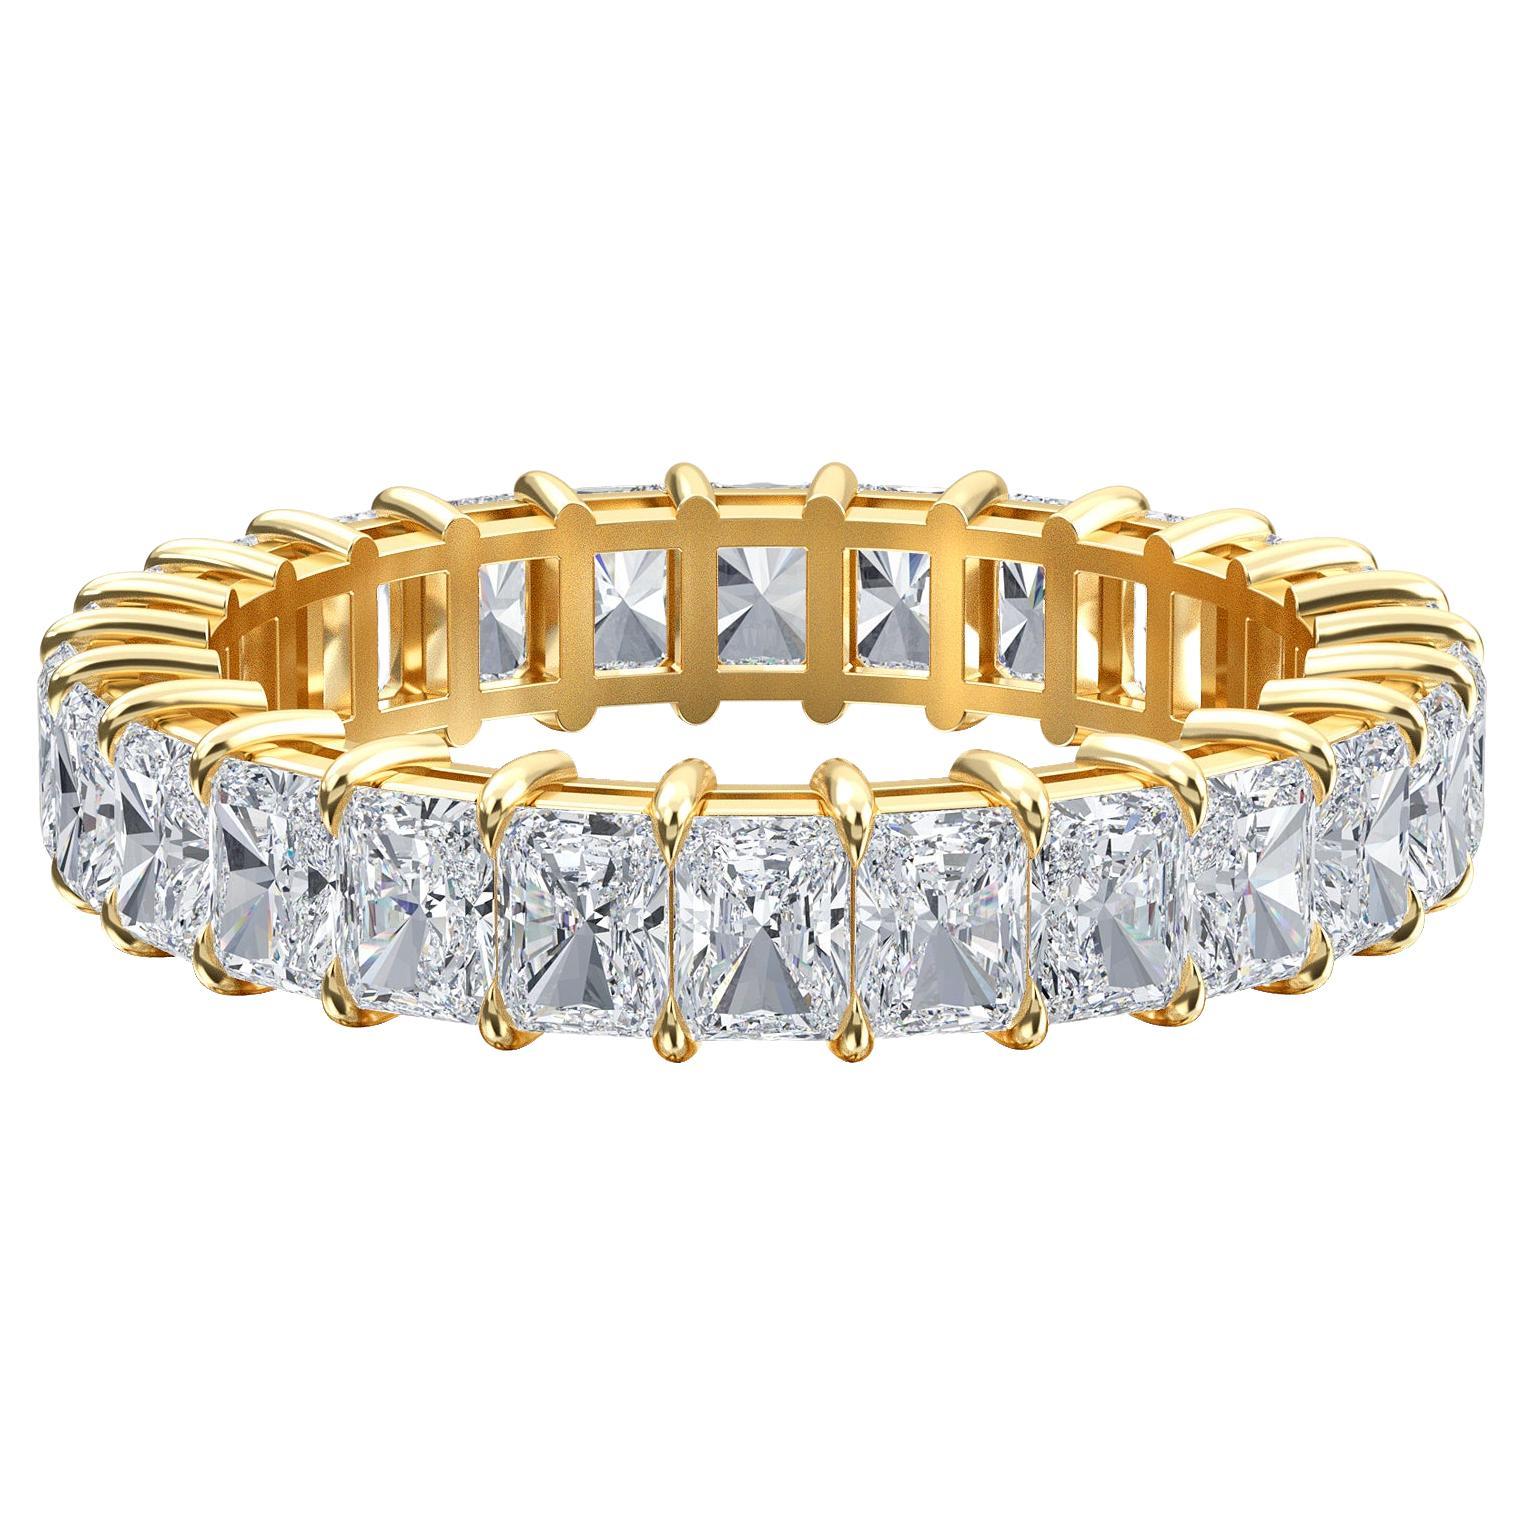 Bracelet d'éternité en diamants rayonnants, poids total de 2.75 carats